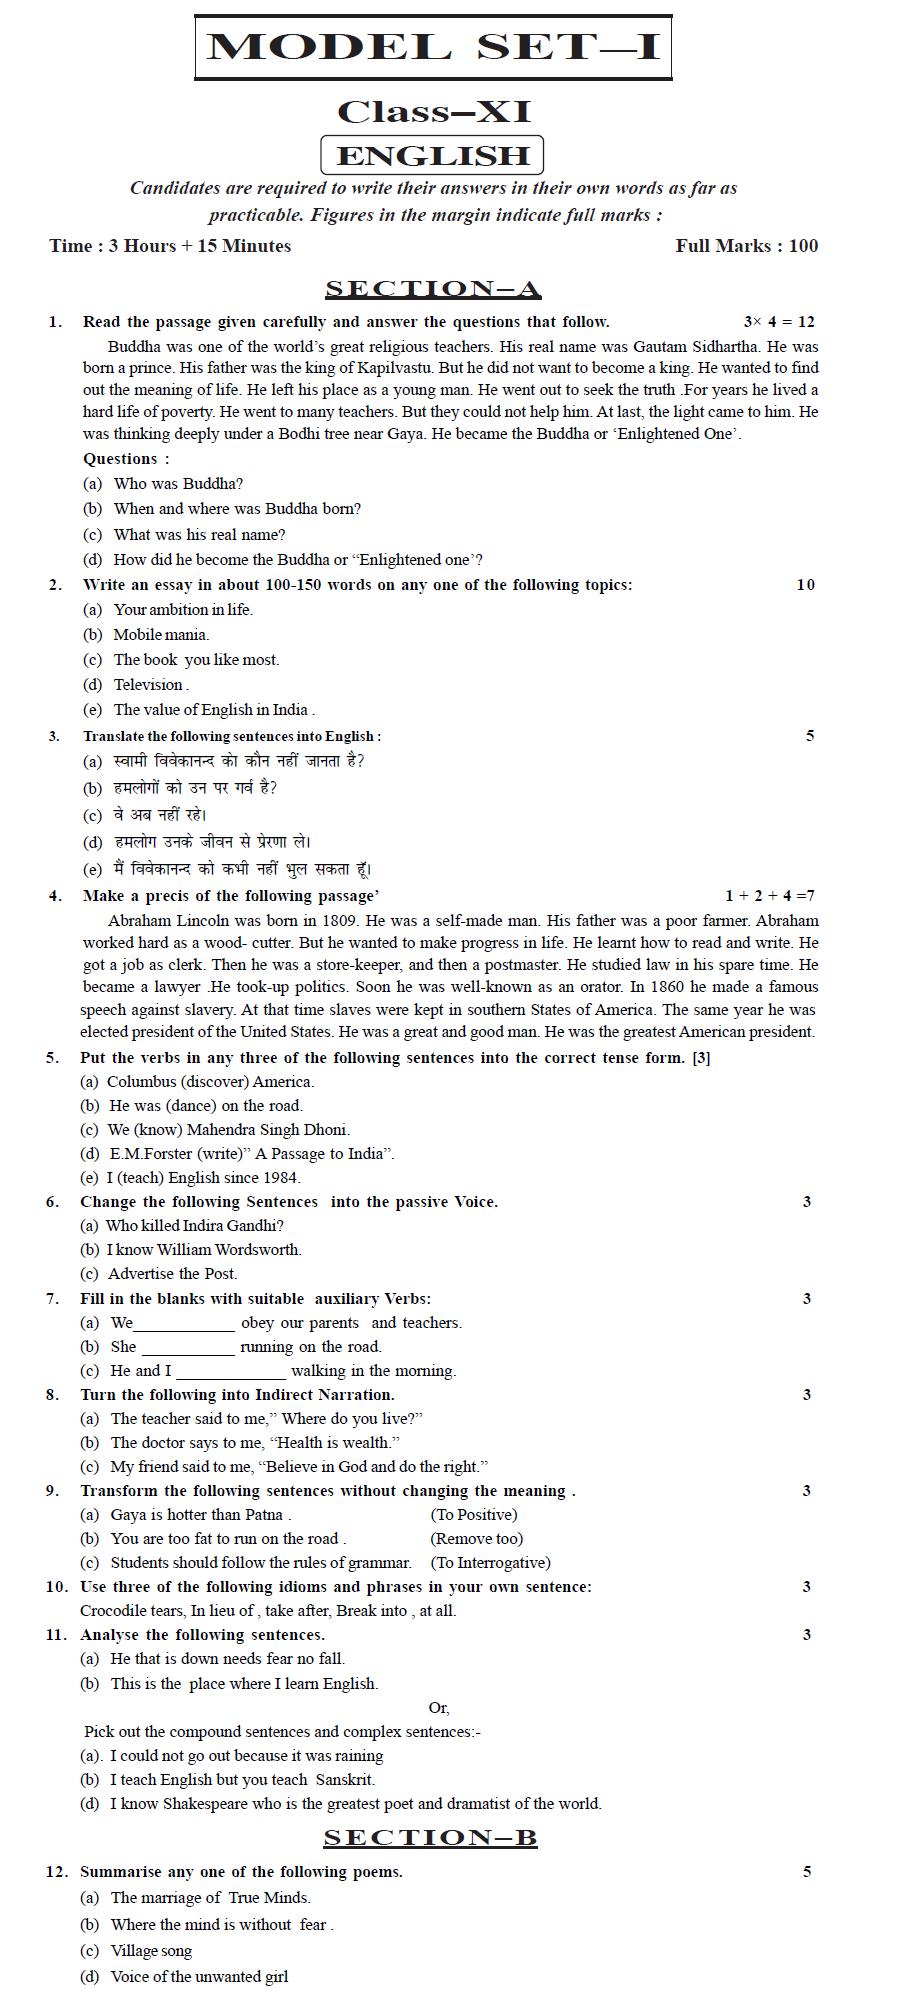 Bihar Board Class XI Humanities Model Question Papers - English